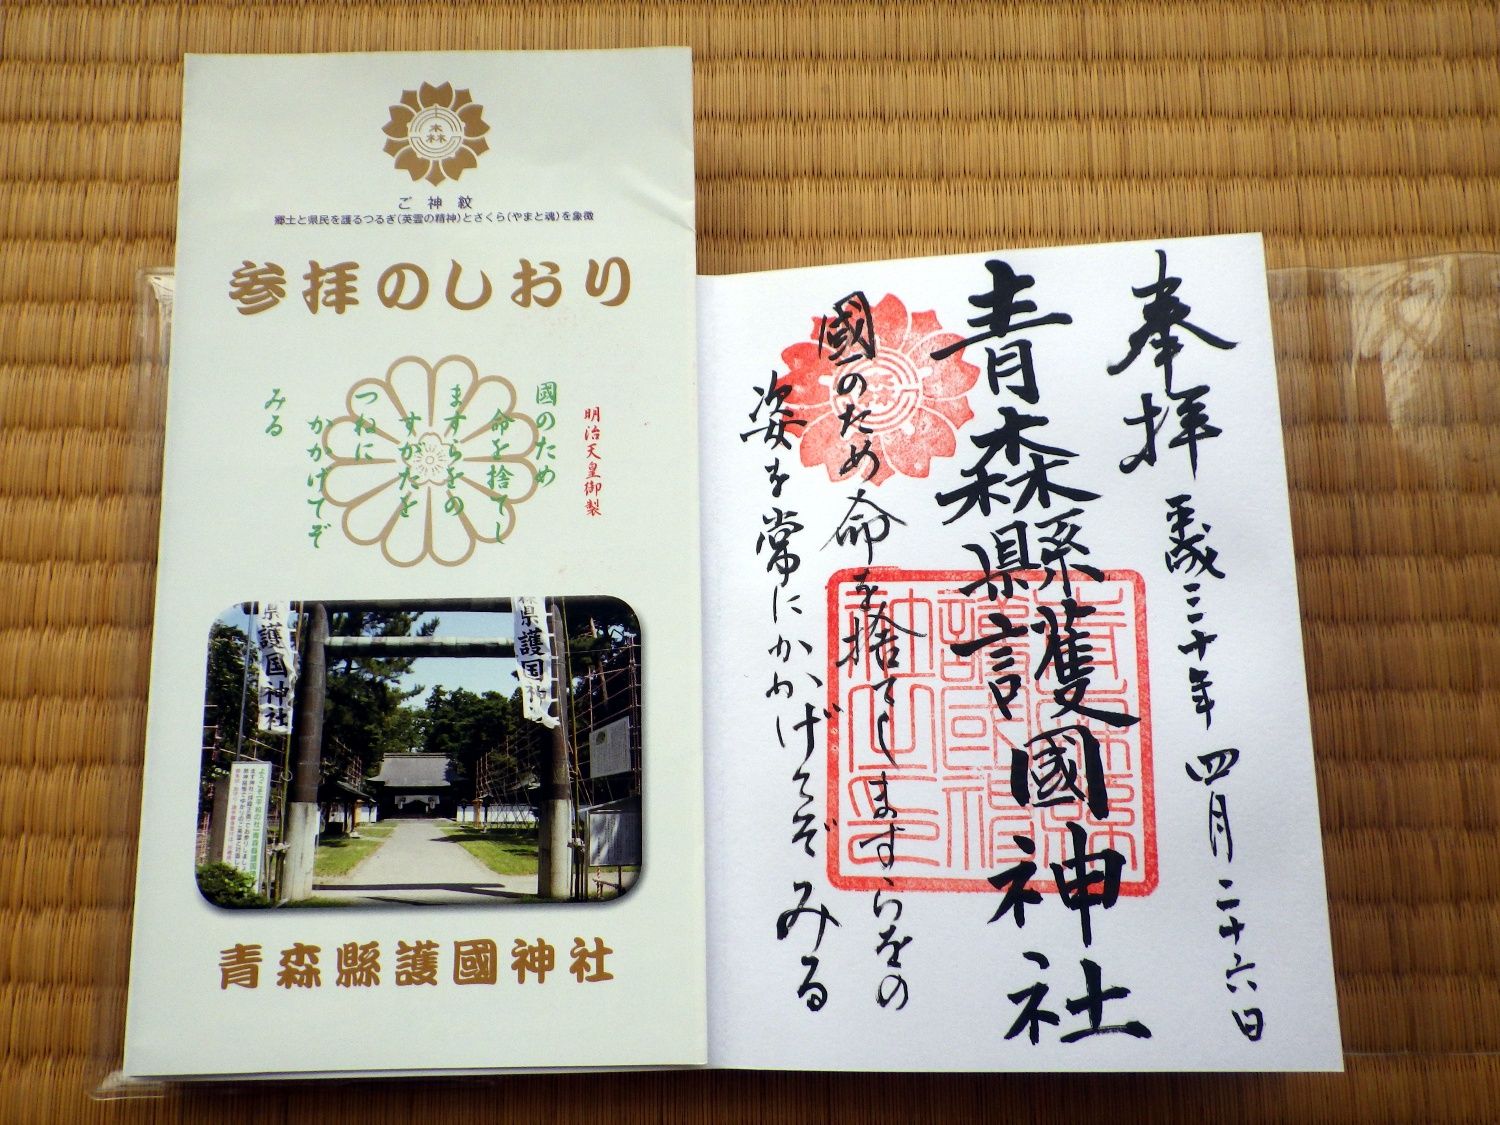 ぶらり弘前 護国神社 で御朱印を頂いてきました やまんば岩木のブログ 楽天ブログ